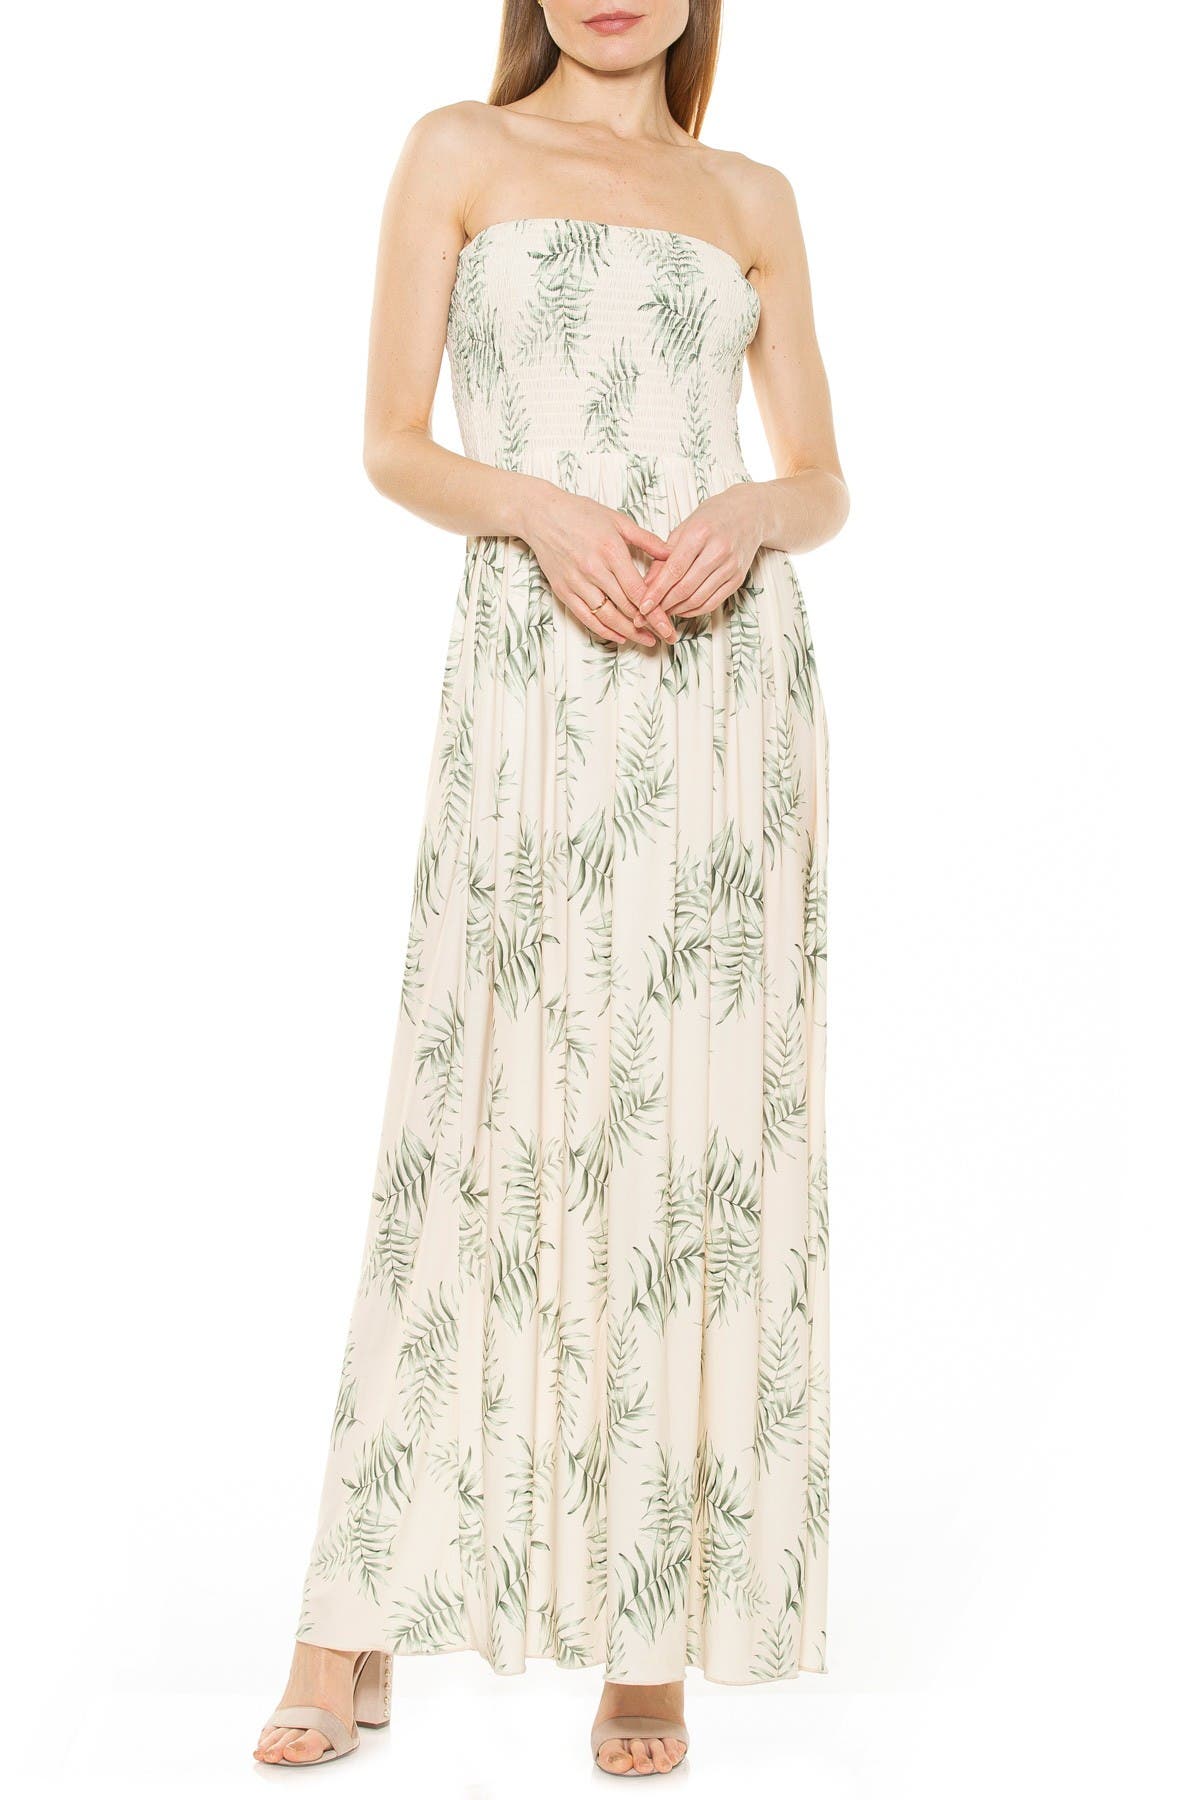 Alexia Admor Emmy Strapless Smocked Maxi Dress In Ivory Palm